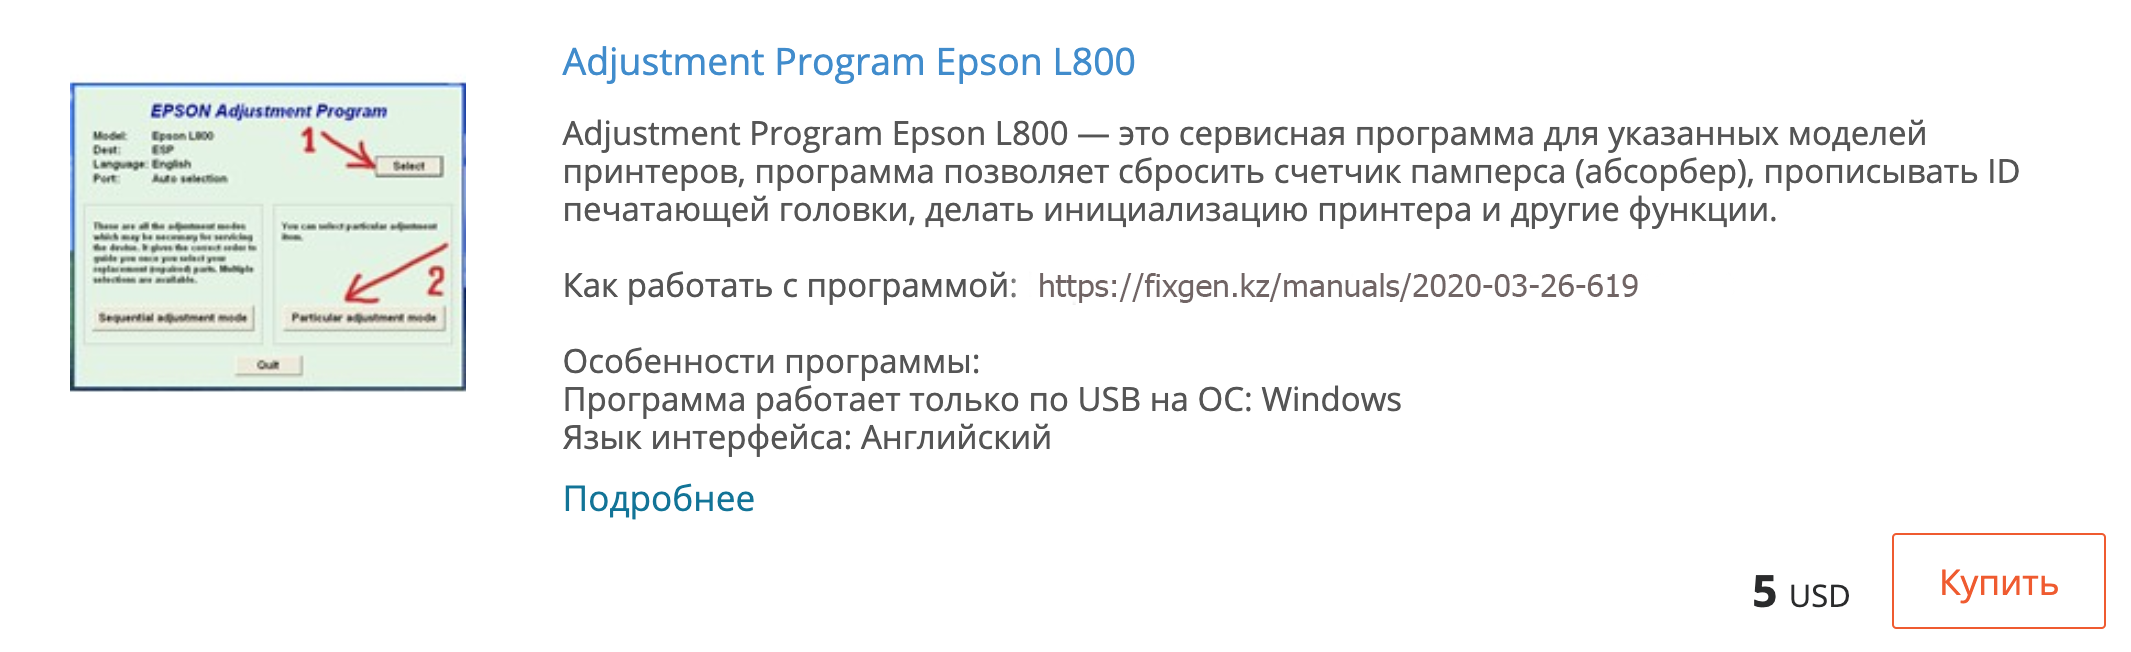 Купить Adjustment program Epson L800